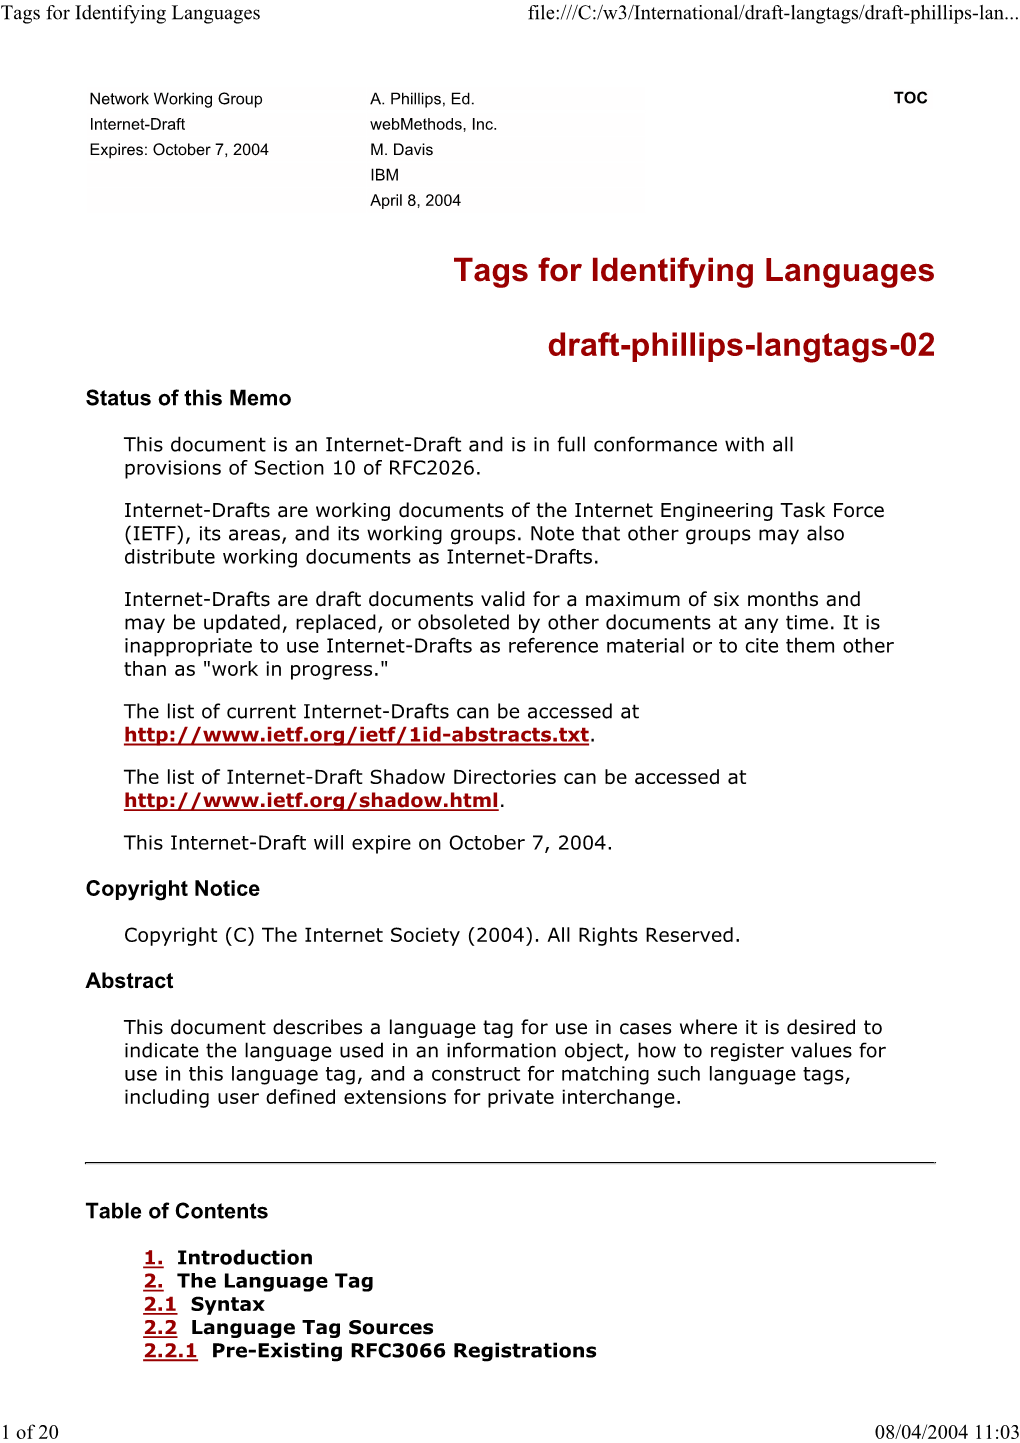 Tags for Identifying Languages File:///C:/W3/International/Draft-Langtags/Draft-Phillips-Lan